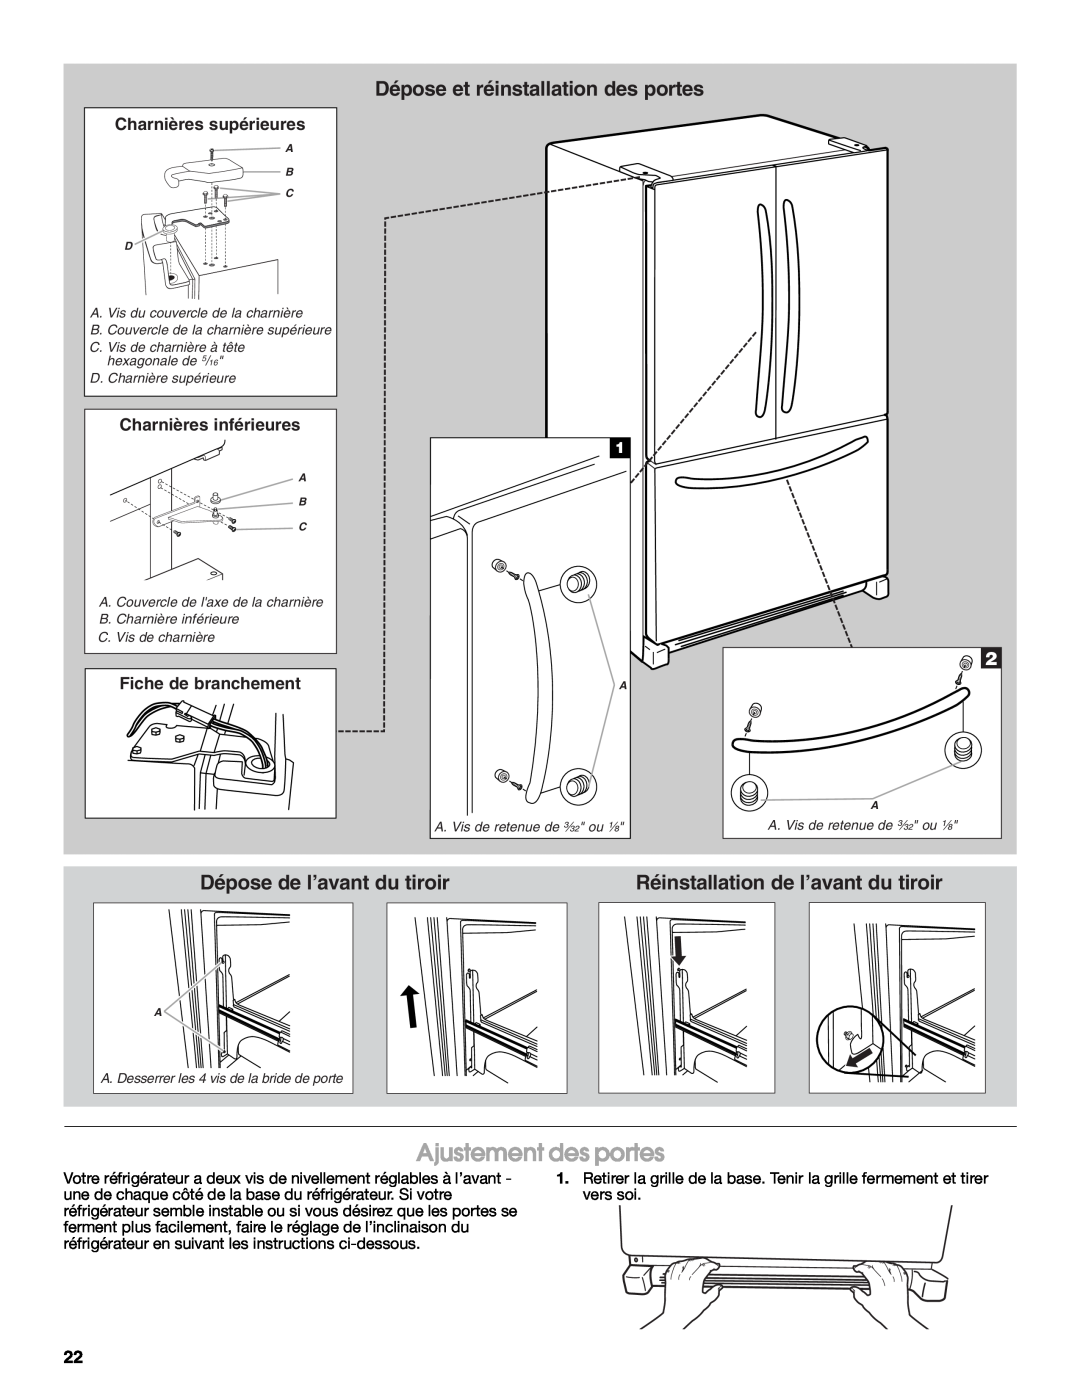 Jenn-Air W10276070A Ajustement des portes, Dépose et réinstallation des portes, Dépose de l’avant du tiroir 